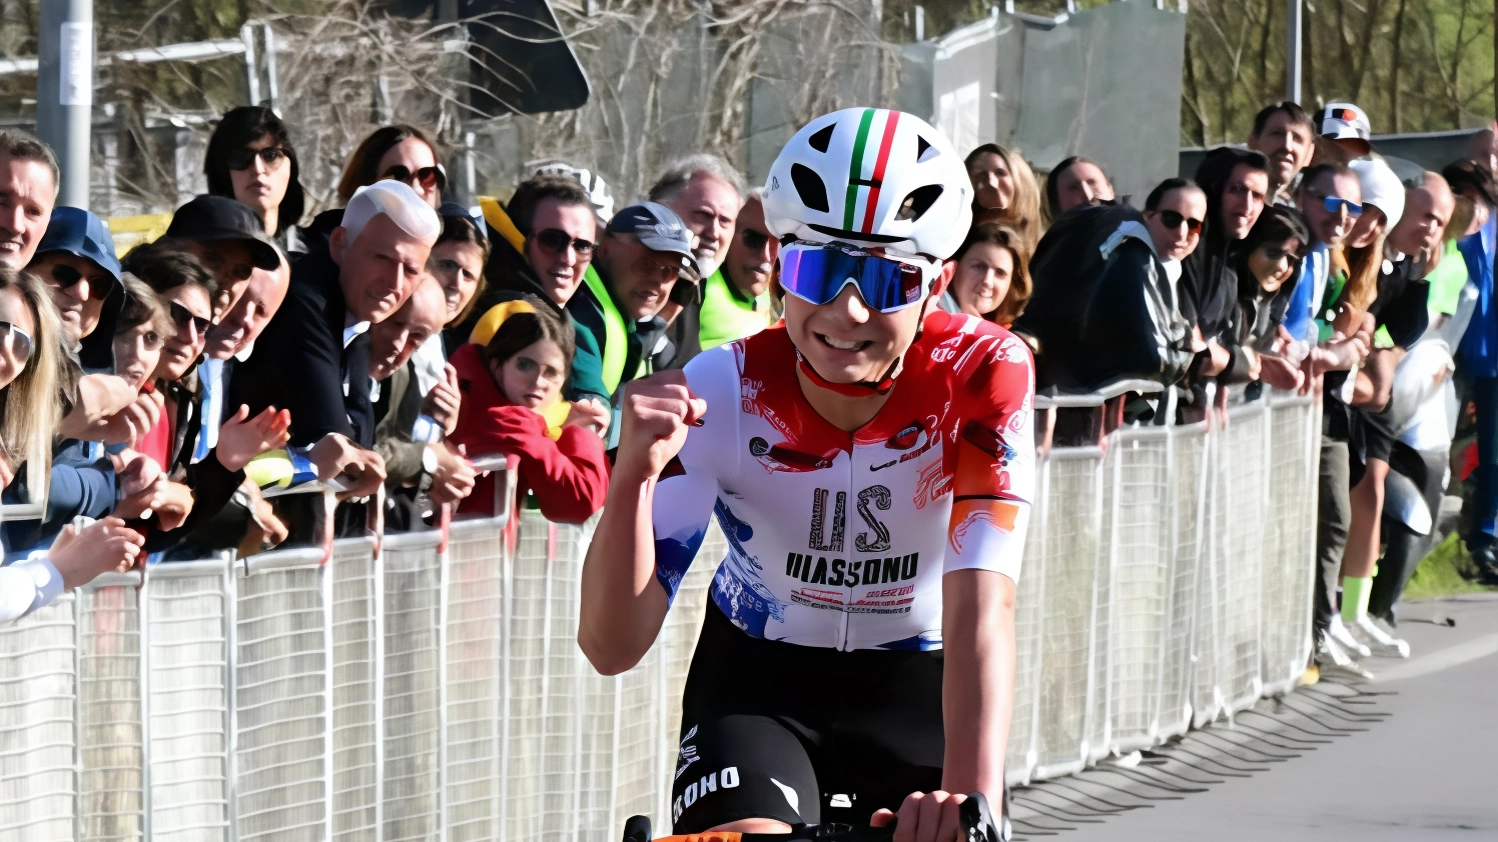 Il giovane ciclista Achille Bellato trionfa nel "Lombardia Giovani" grazie alla sua maturità fisica e mentale. Vince a Costamasnaga, battendo Luca Frontini. È il secondo successo stagionale per l'Unione Sportiva Biassono.